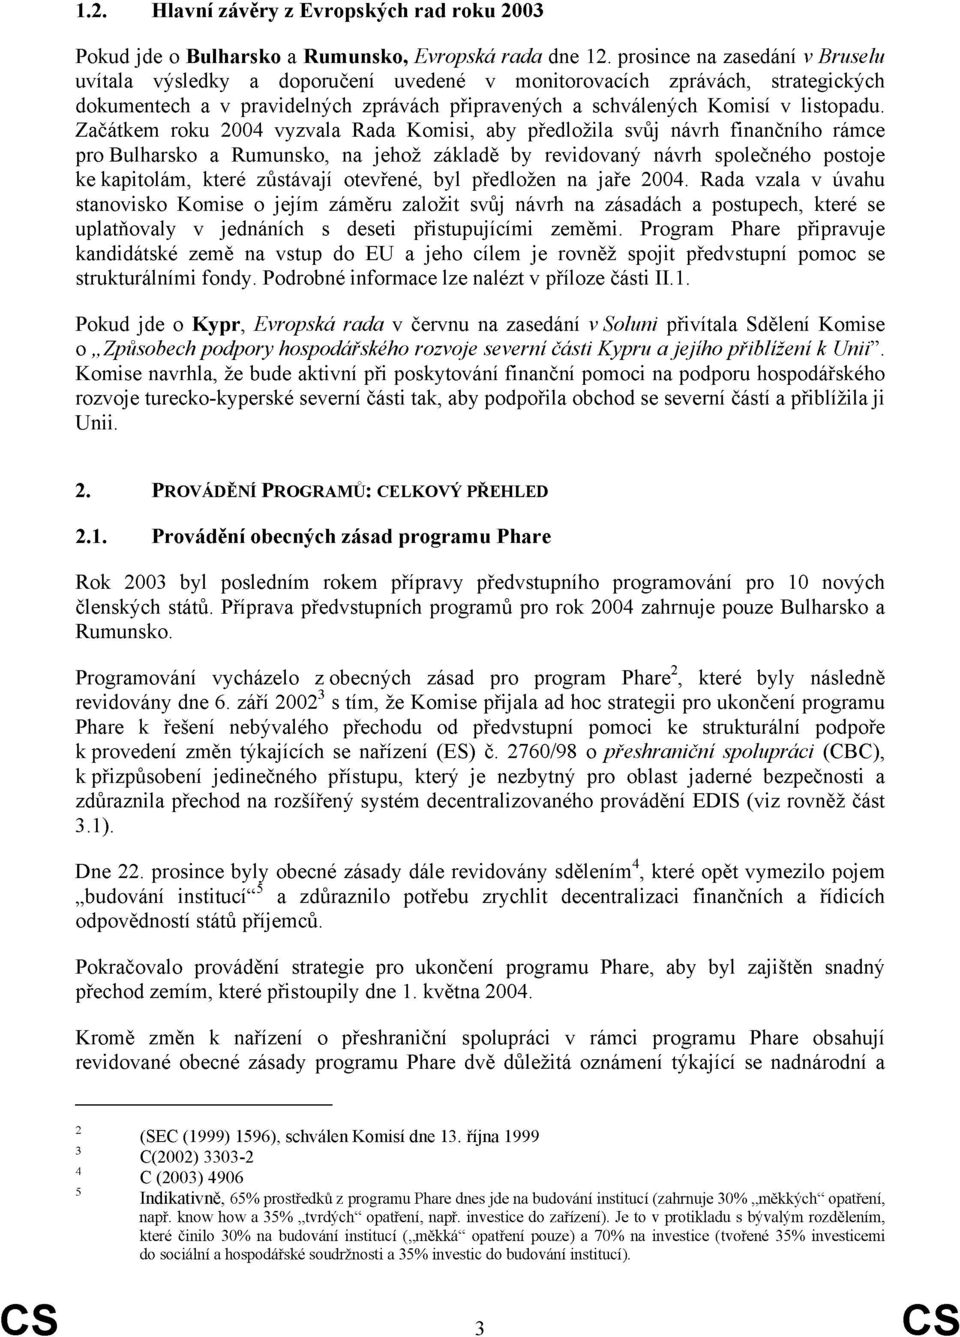 Začátkem roku 2004 vyzvala Rada Komisi, aby předložila svůj návrh finančního rámce pro Bulharsko a Rumunsko, na jehož základě by revidovaný návrh společného postoje ke kapitolám, které zůstávají